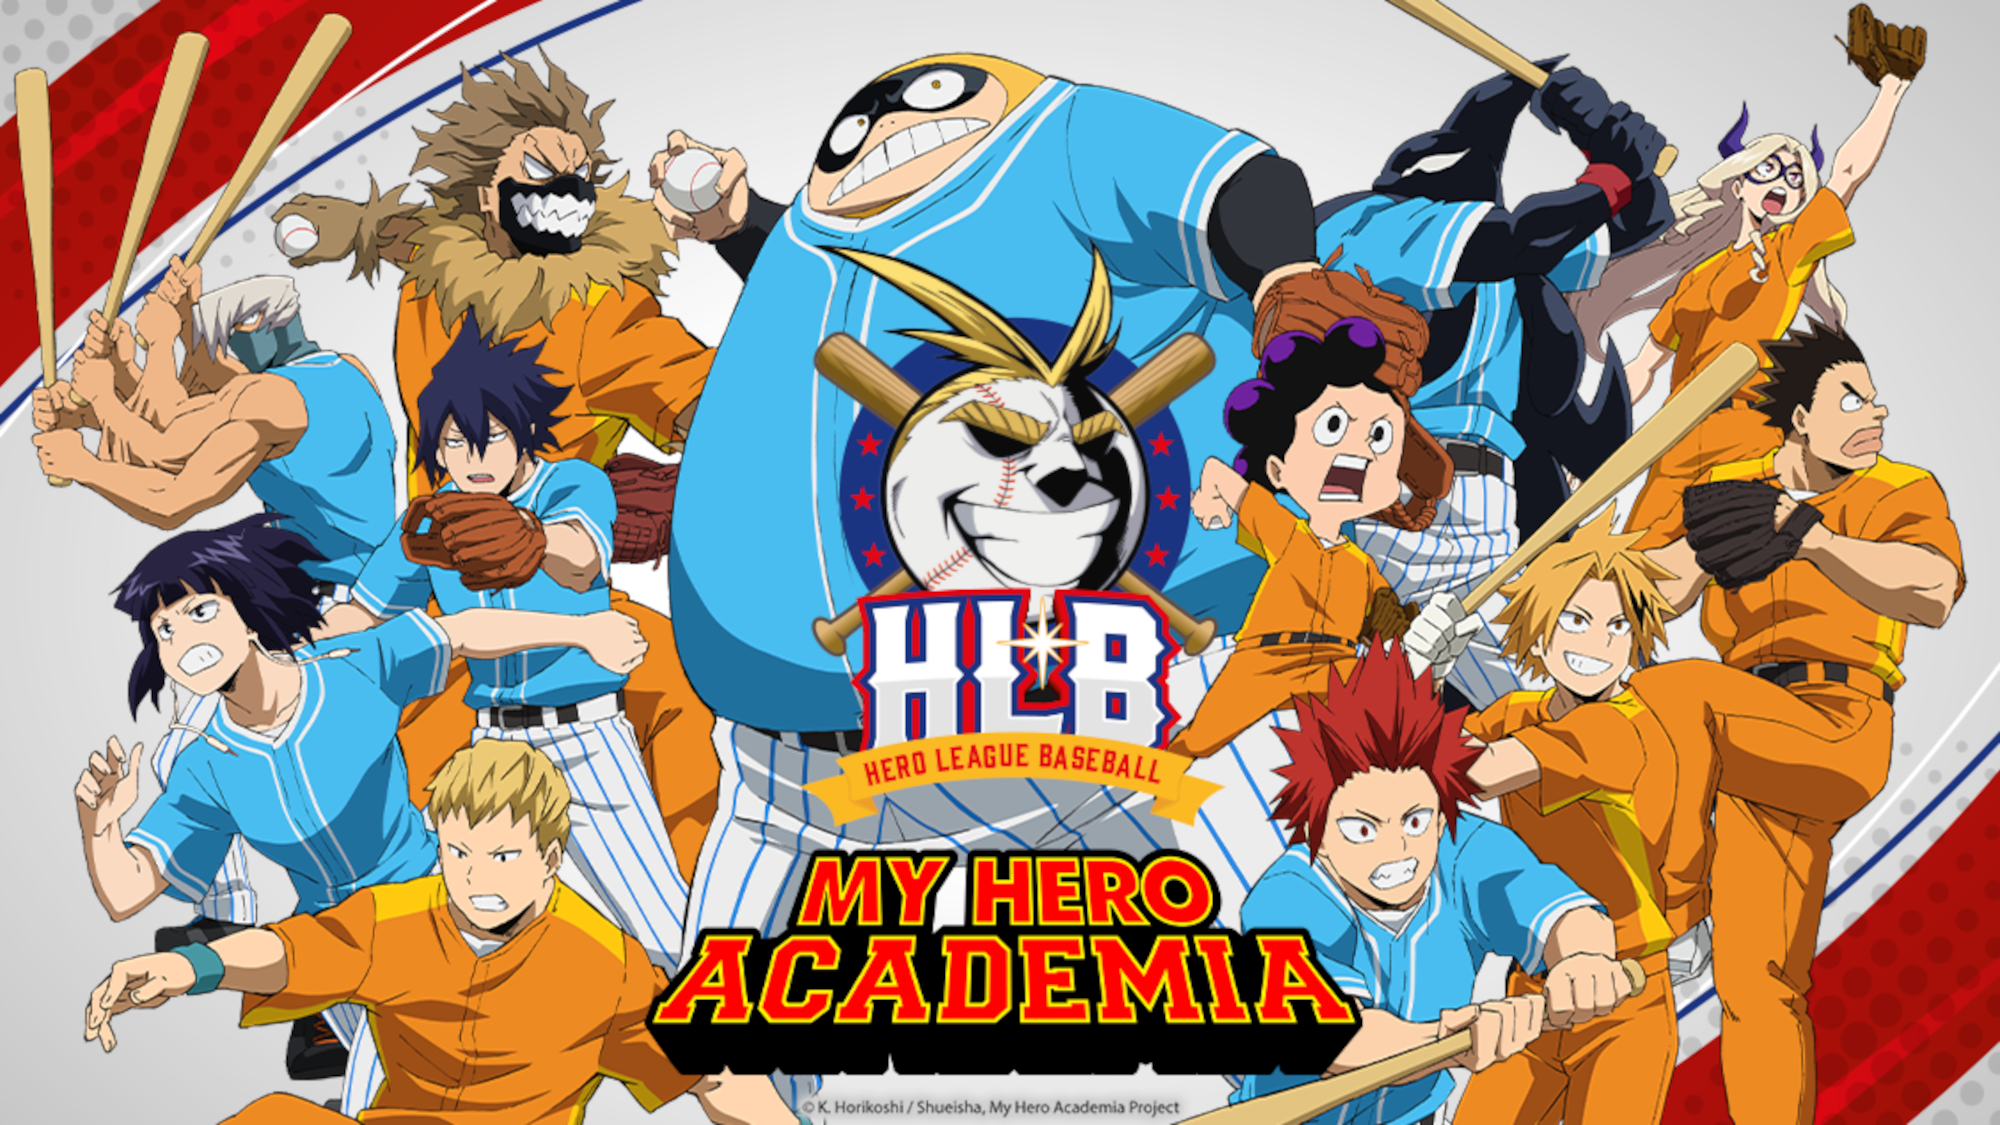 When Do the 'My Hero Academia' OVAs Premiere in America?